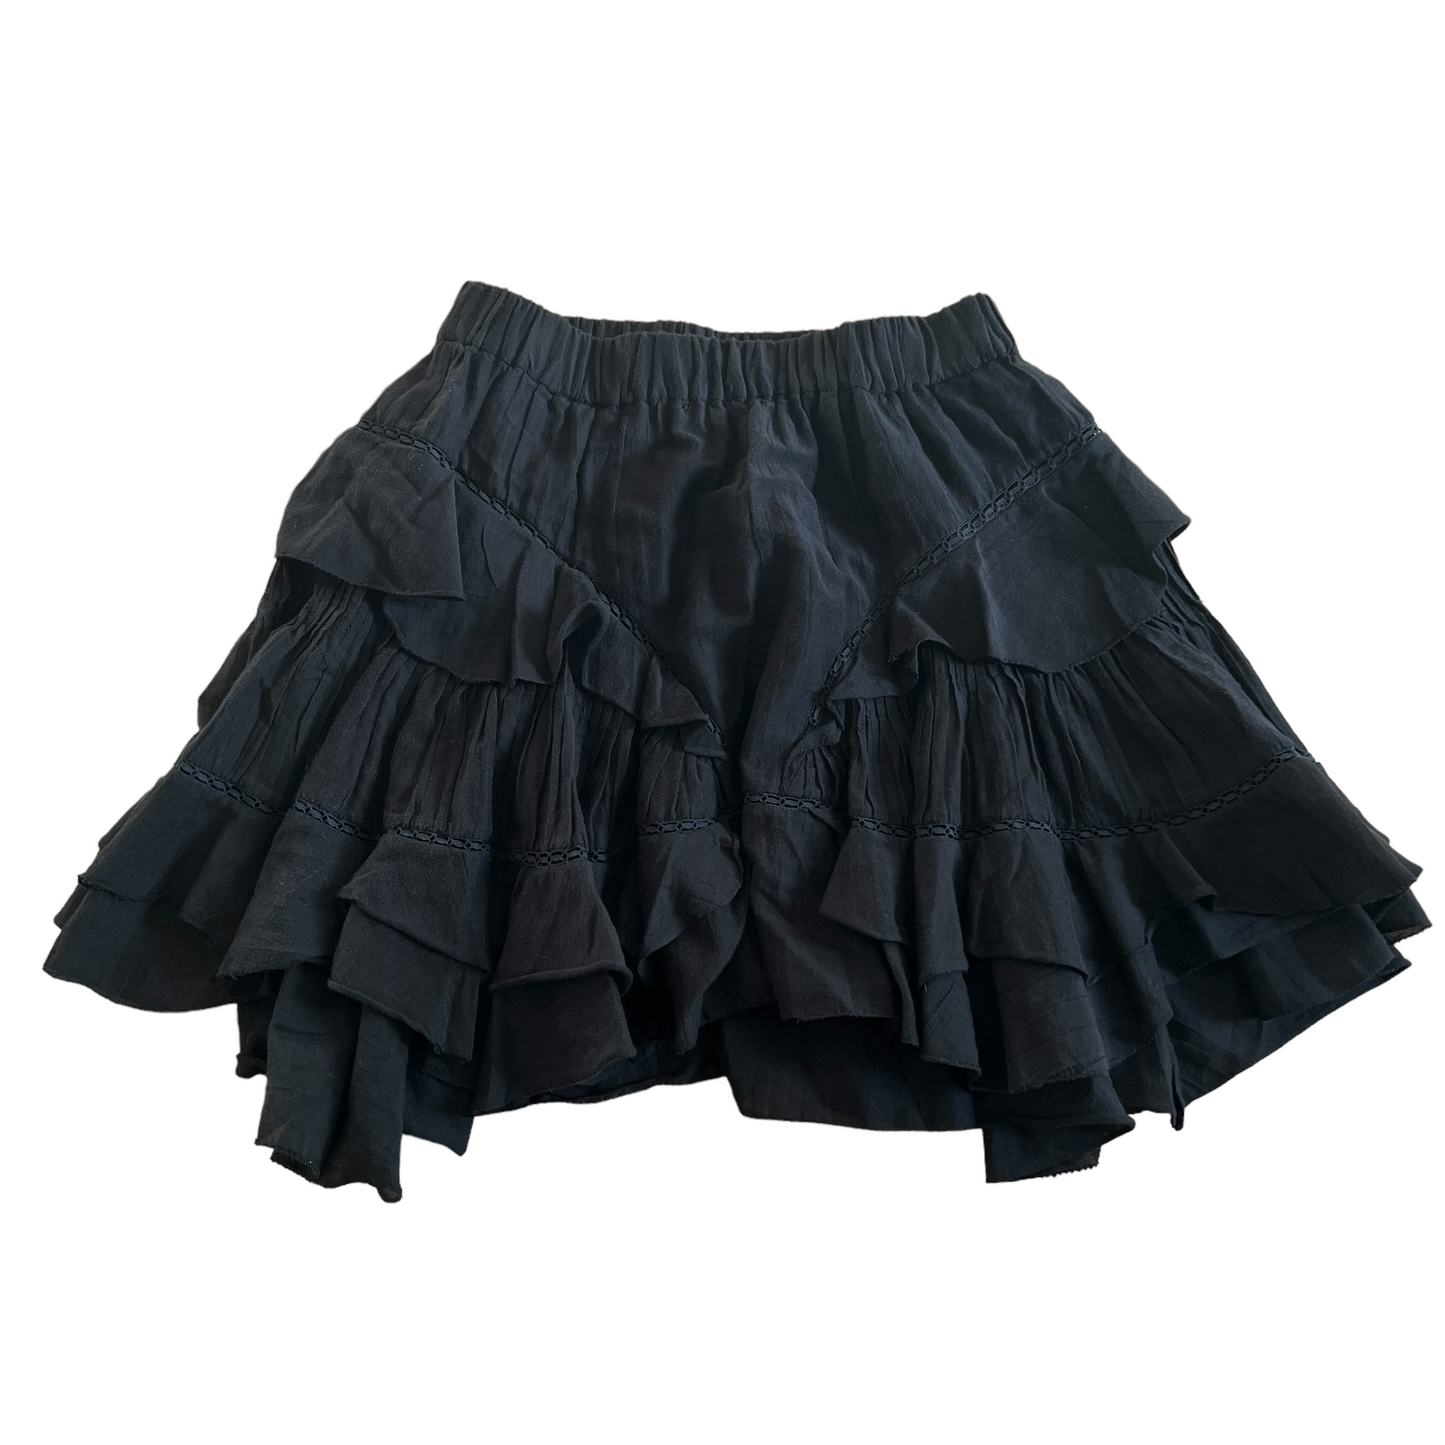 Black Ruffled Skirt - S/M